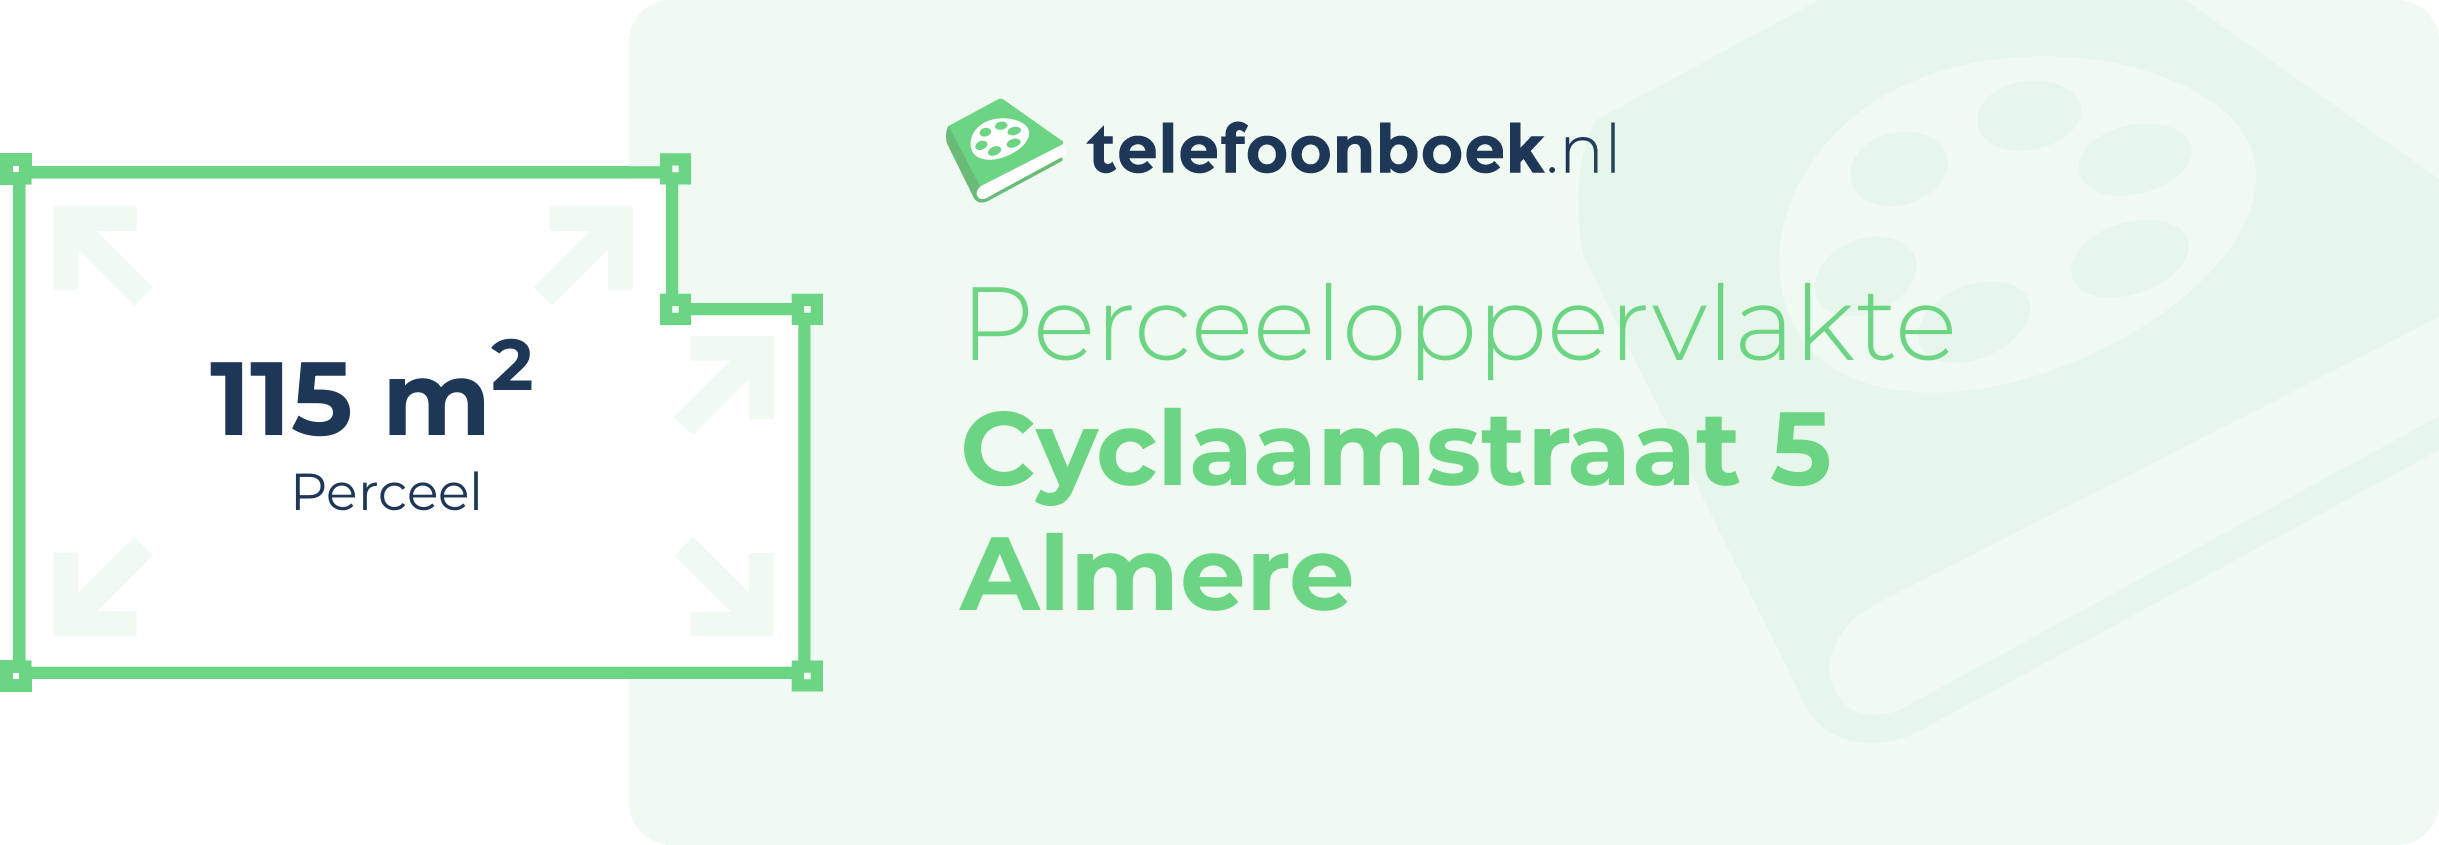 Perceeloppervlakte Cyclaamstraat 5 Almere